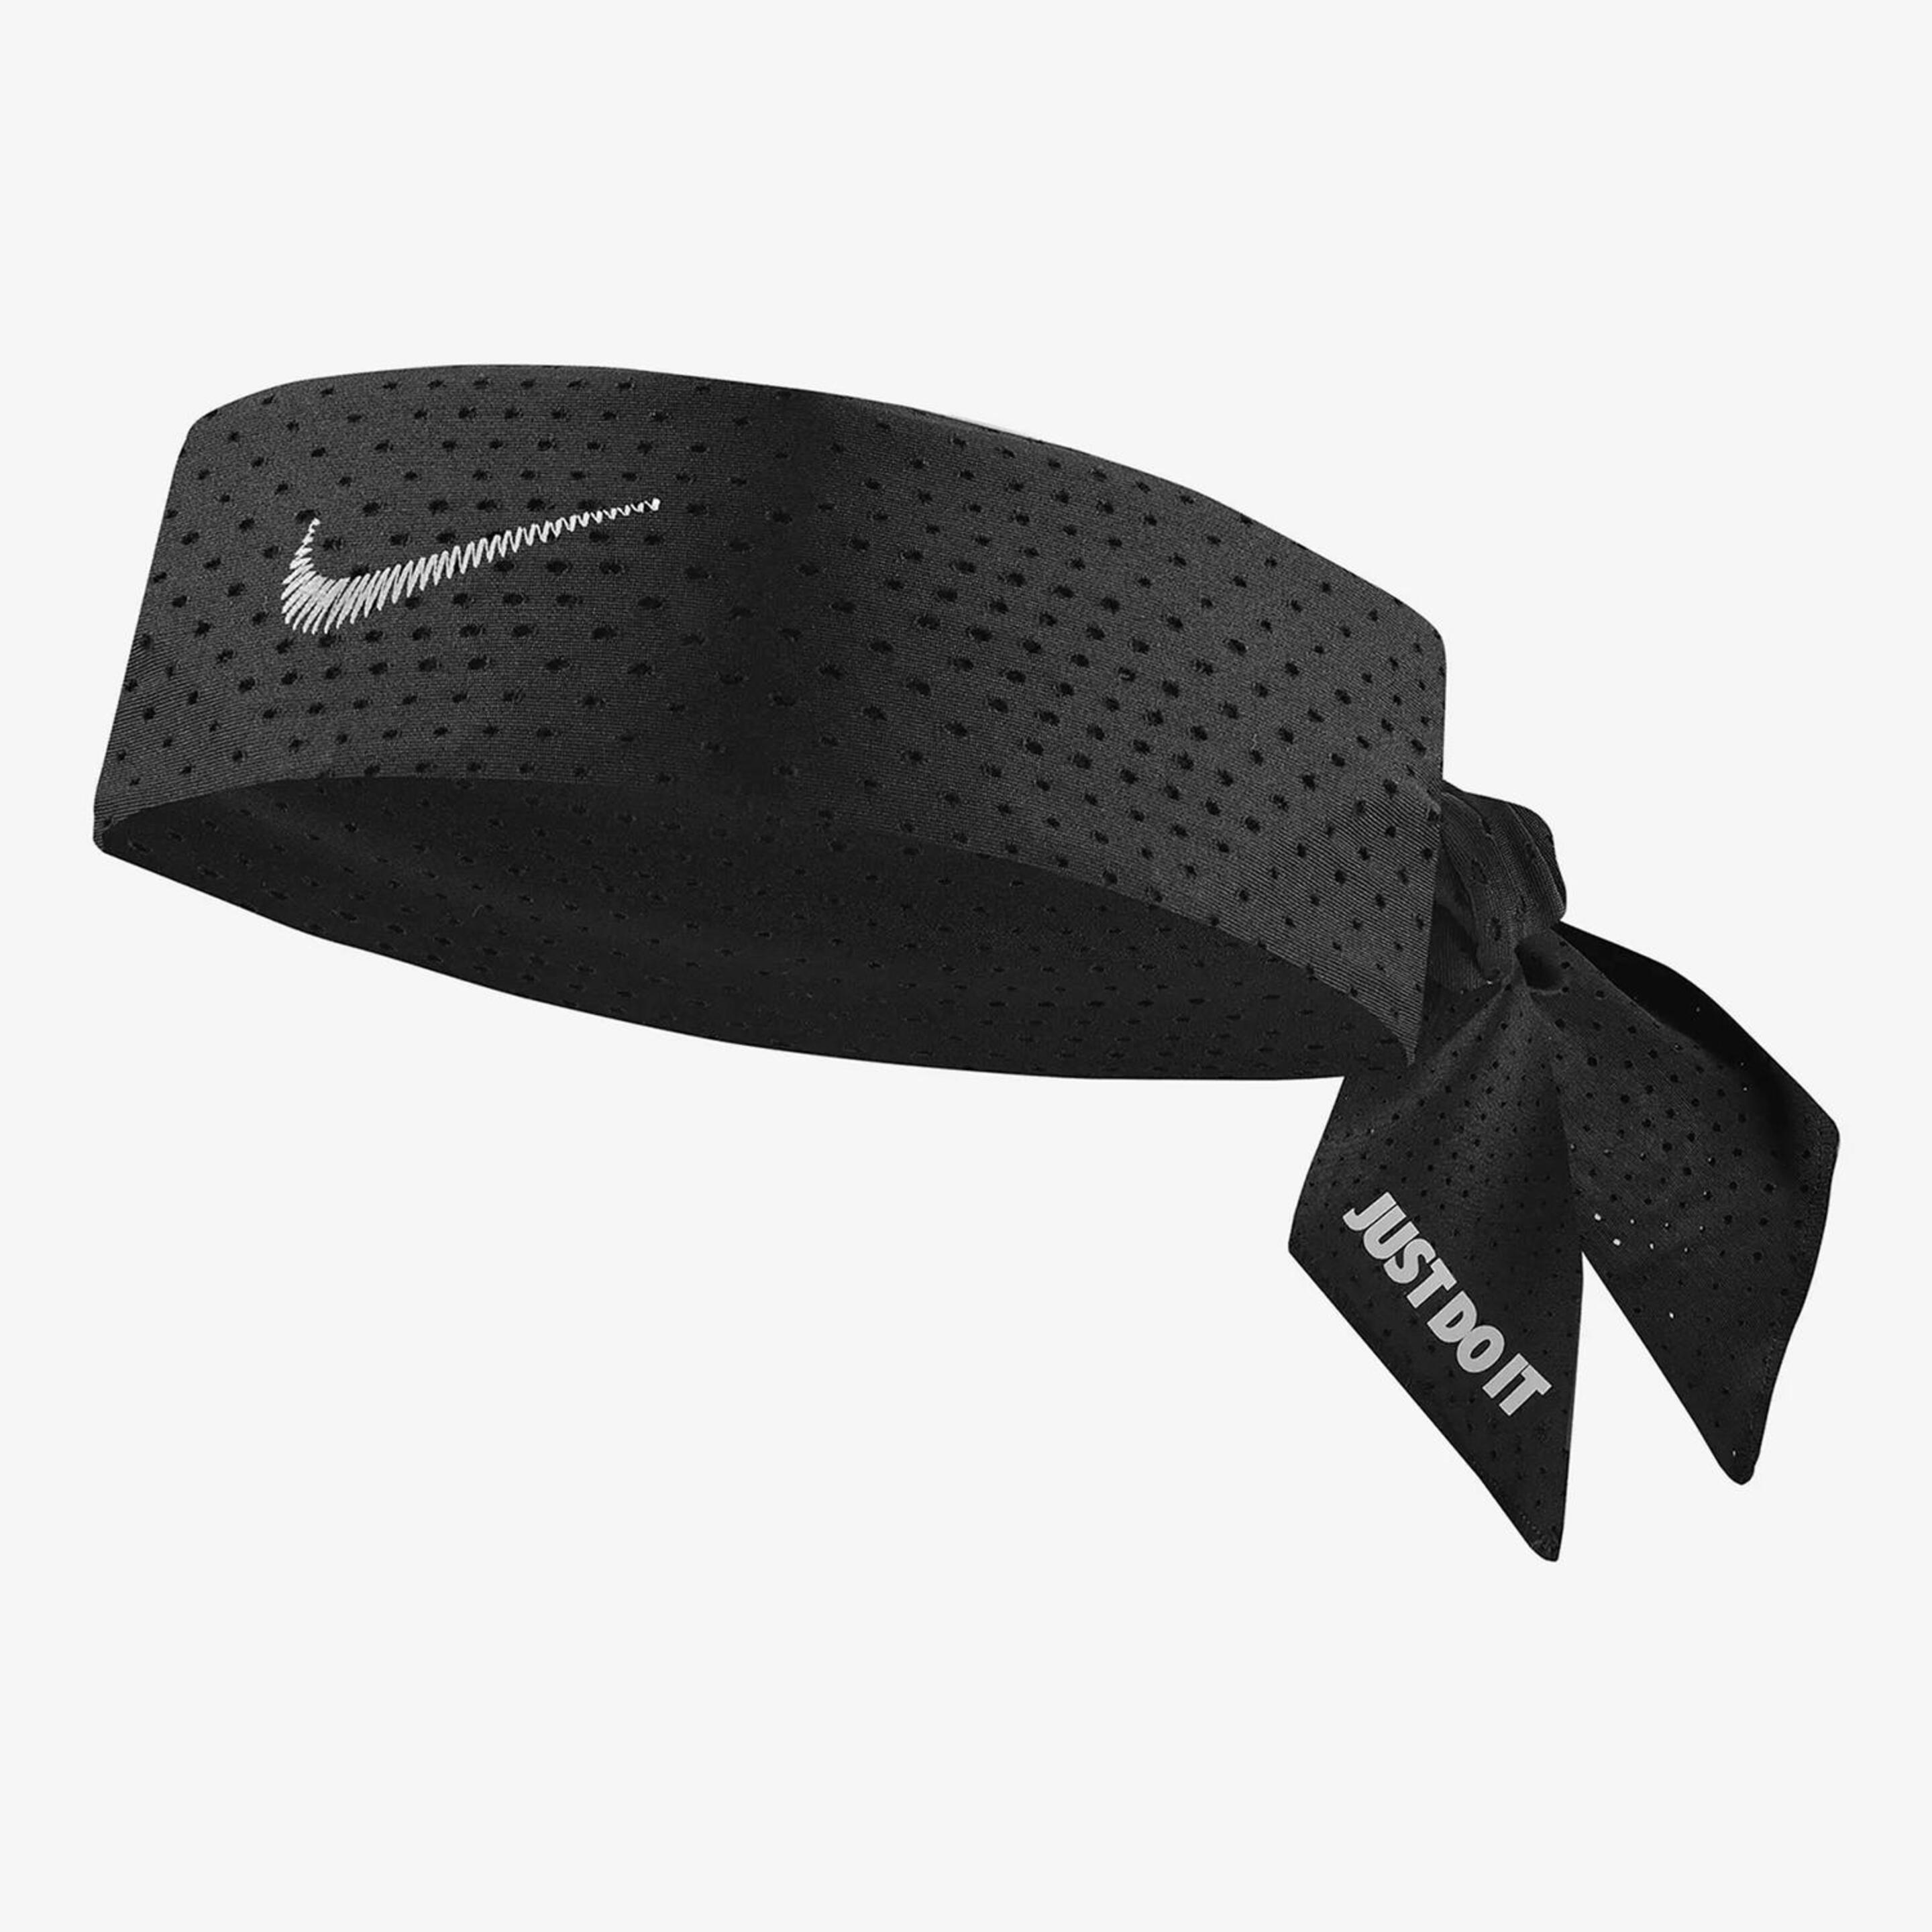 Nike Dri-fit Tie 4.0